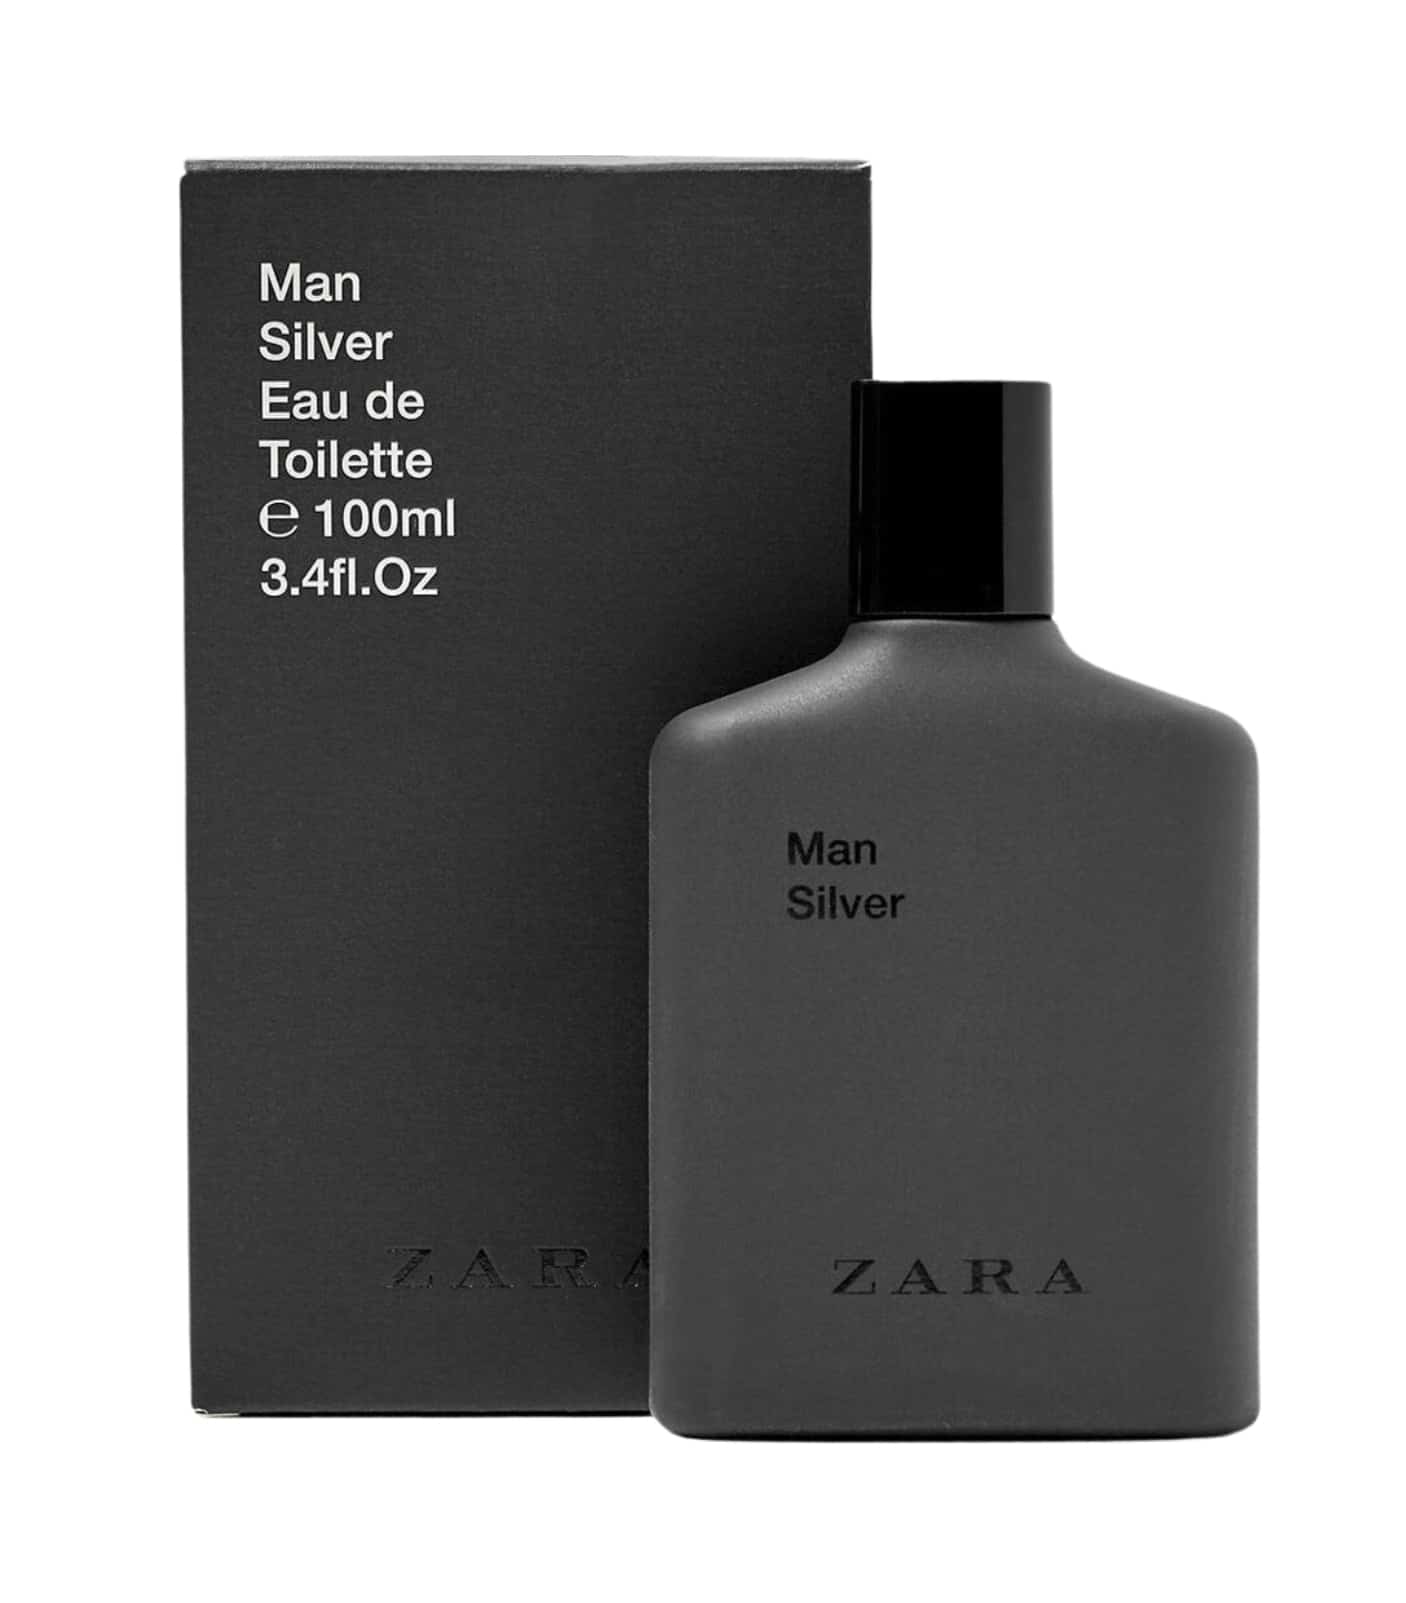 Silver by Zara